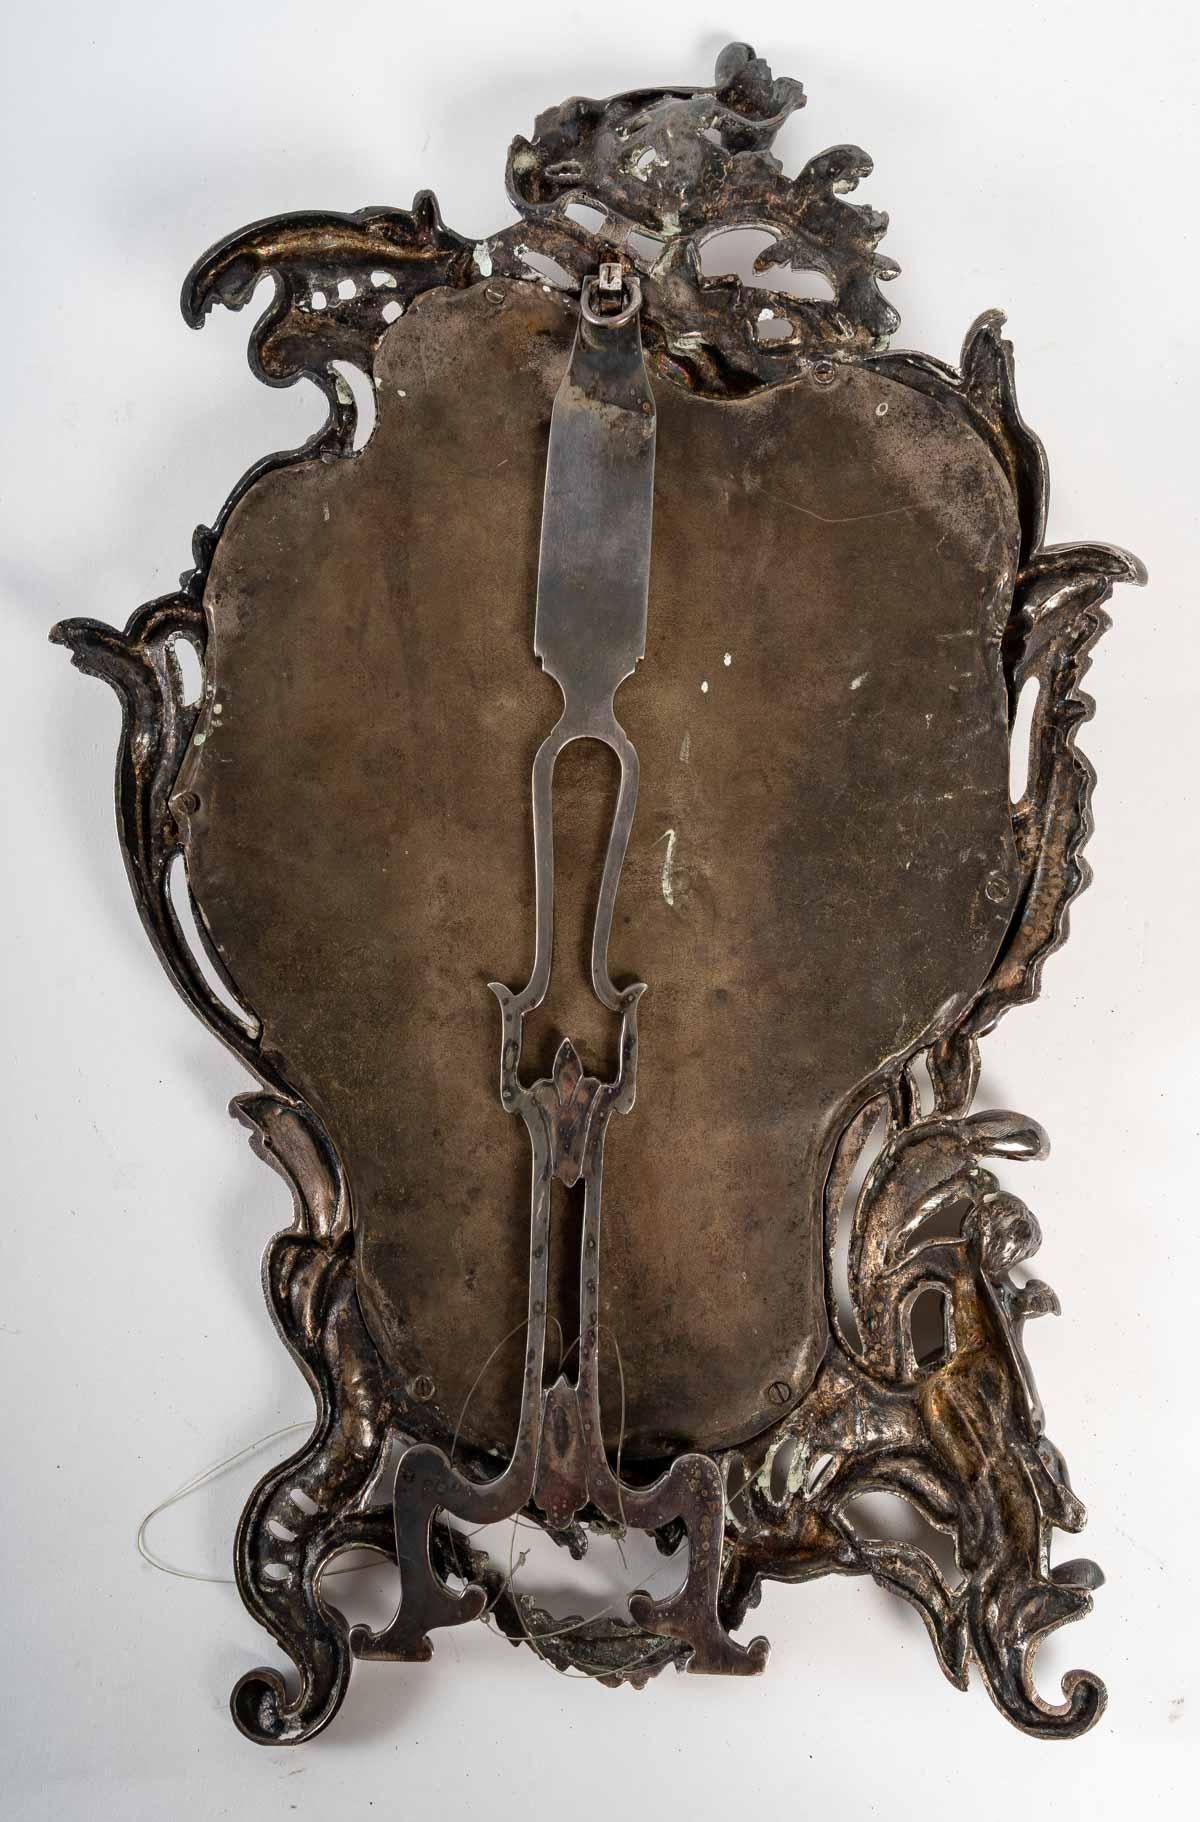 Miroir de table en bronze argenté, 19e siècle
Miroir de table en bronze argenté avec verre au mercure, XIXe siècle, époque Napoléon III.
Mesures : H : 50 cm, L : 31 cm, P : 3 cm.